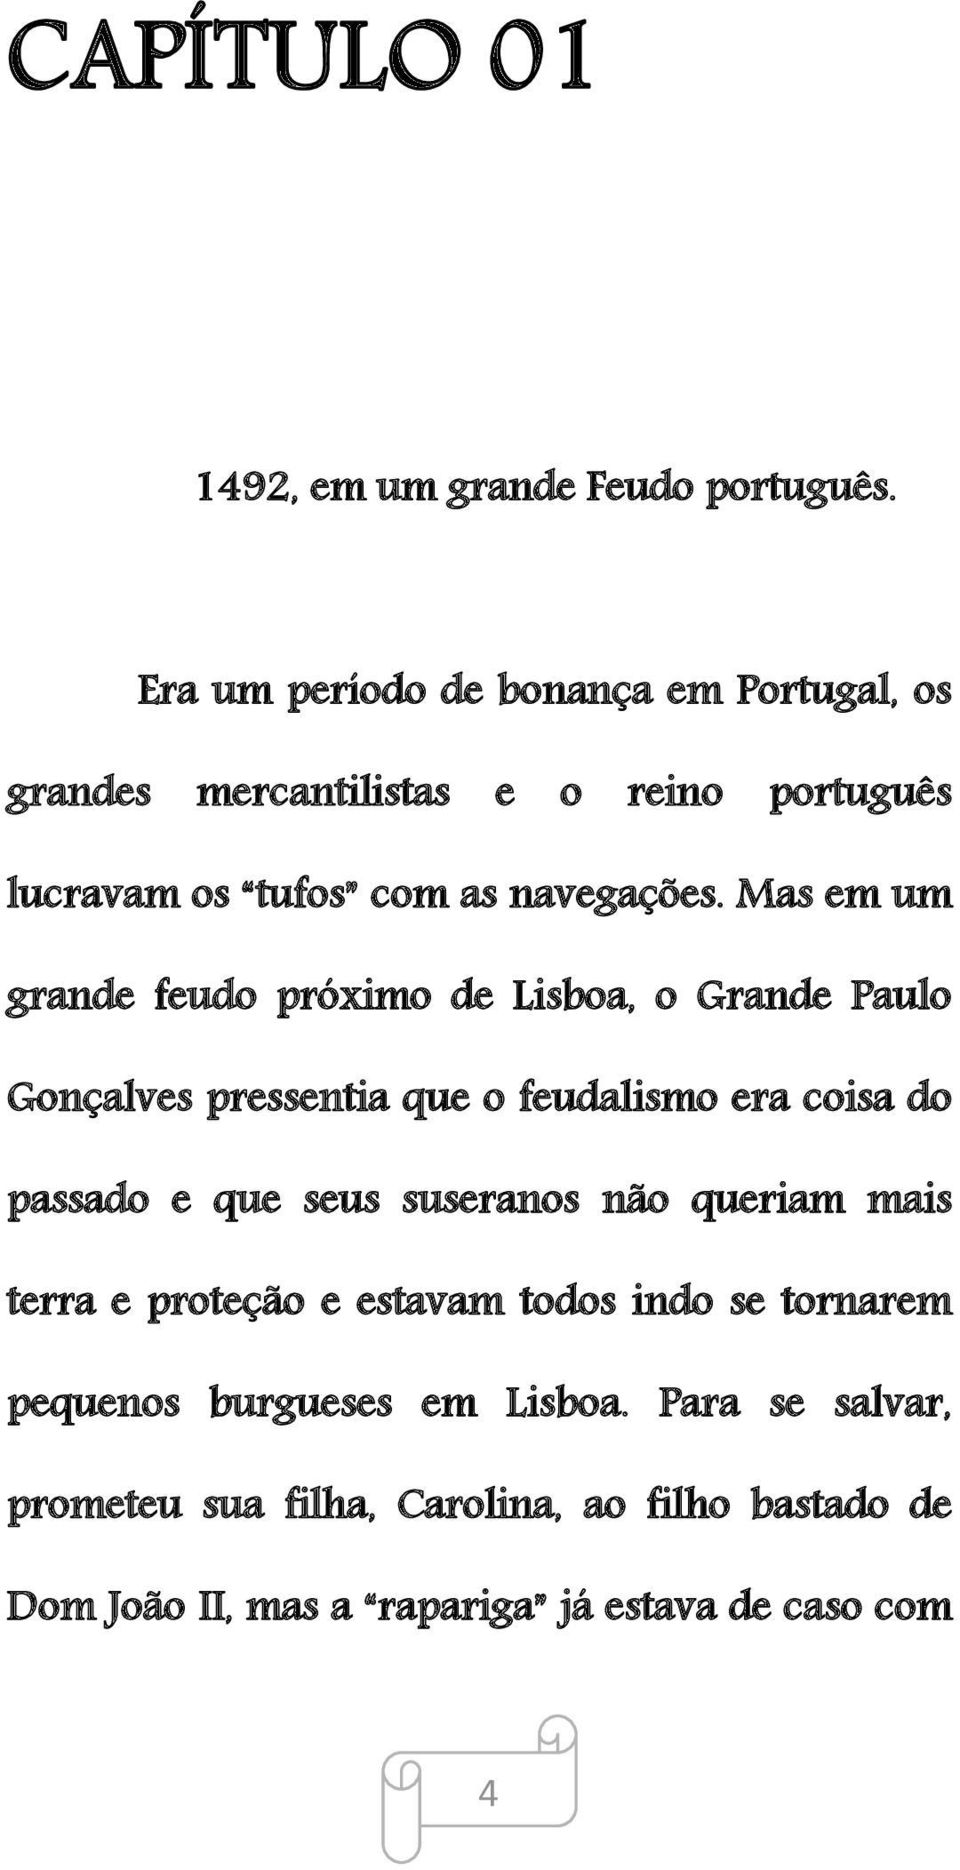 Mas em um grande feudo próximo de Lisboa, o Grande Paulo Gonçalves pressentia que o feudalismo era coisa do passado e que seus